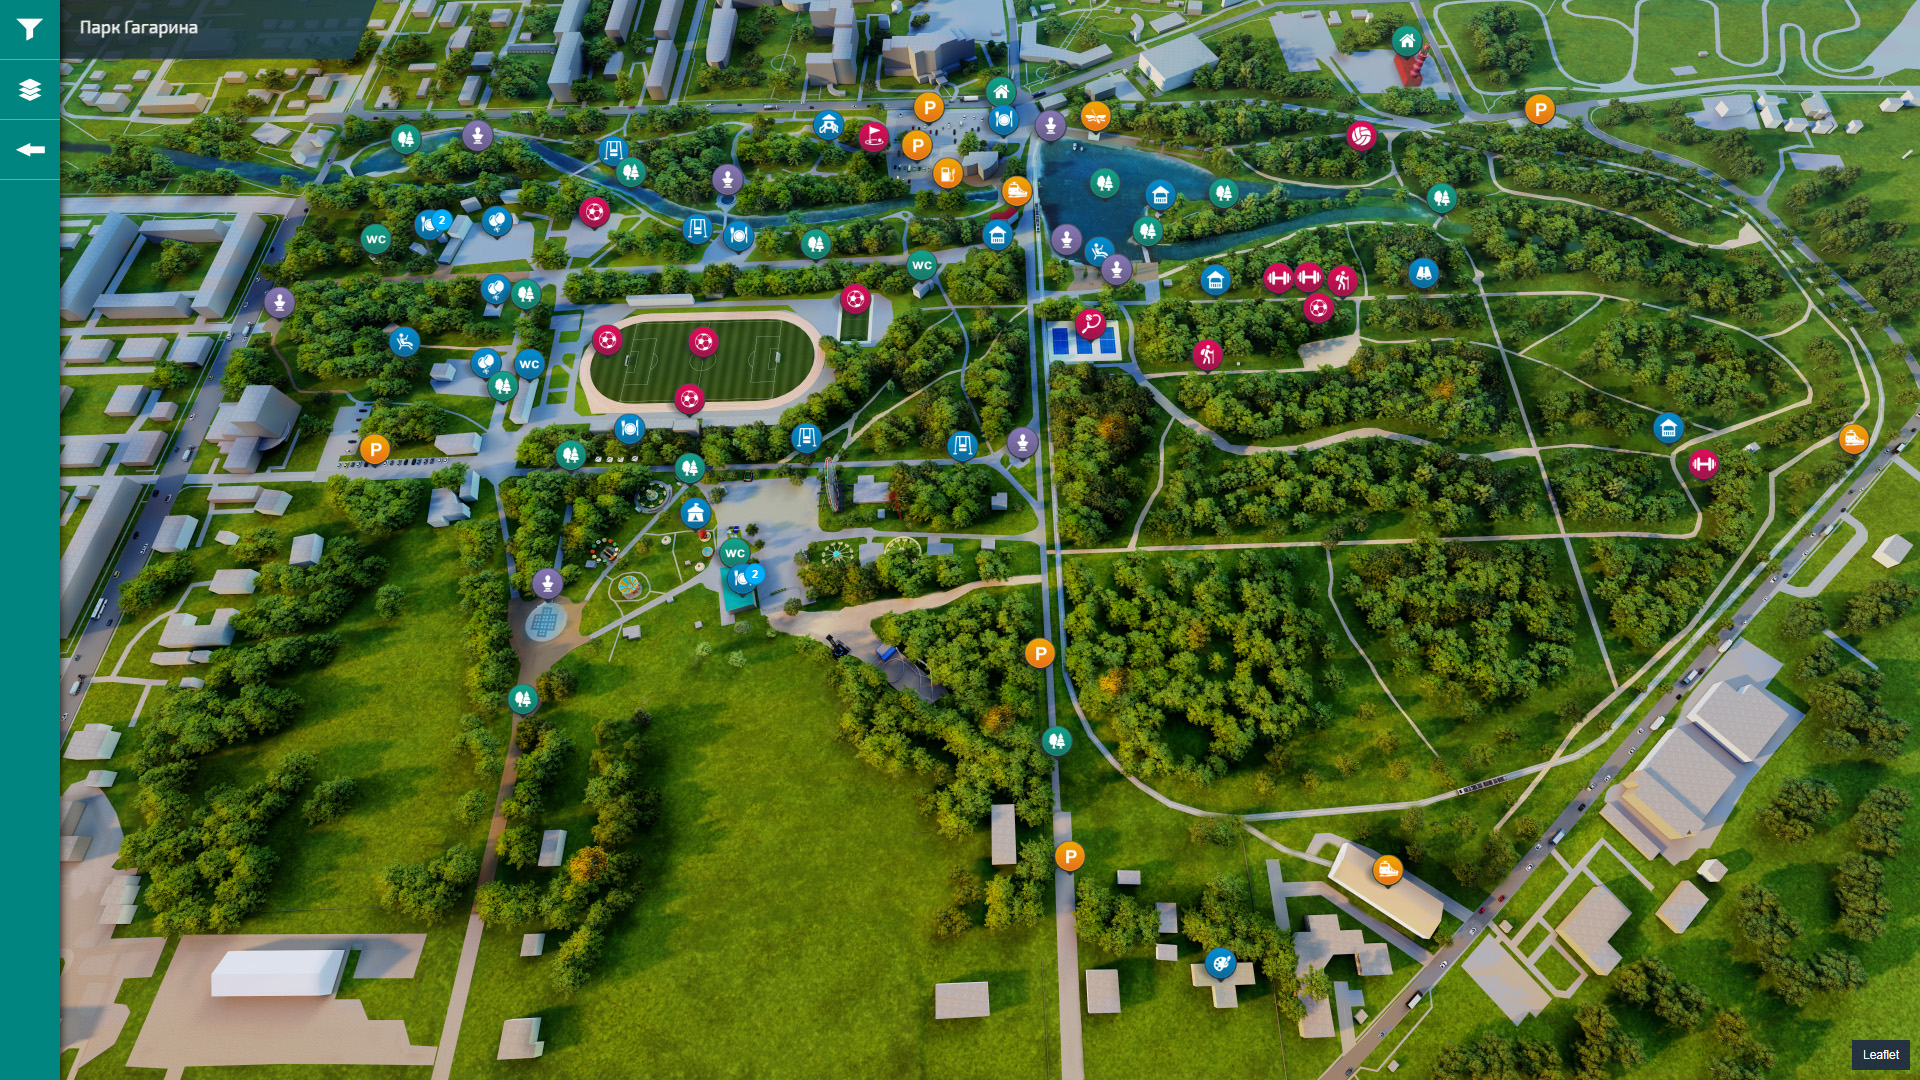 Парк Гагарина - Интерактивная карта